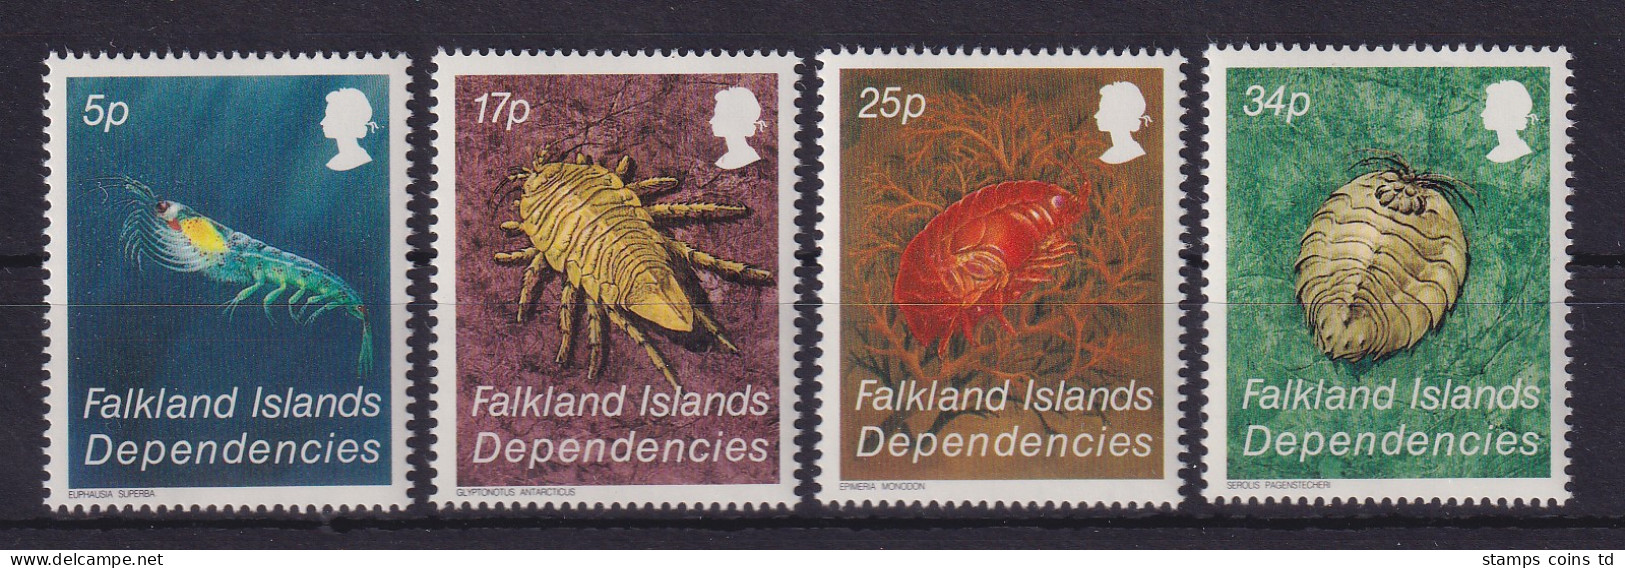 Falkland-Inseln Dependencies 1984 Krebstiere Mi.-Nr. 121-124 Postfrisch ** - Zuid-Georgia